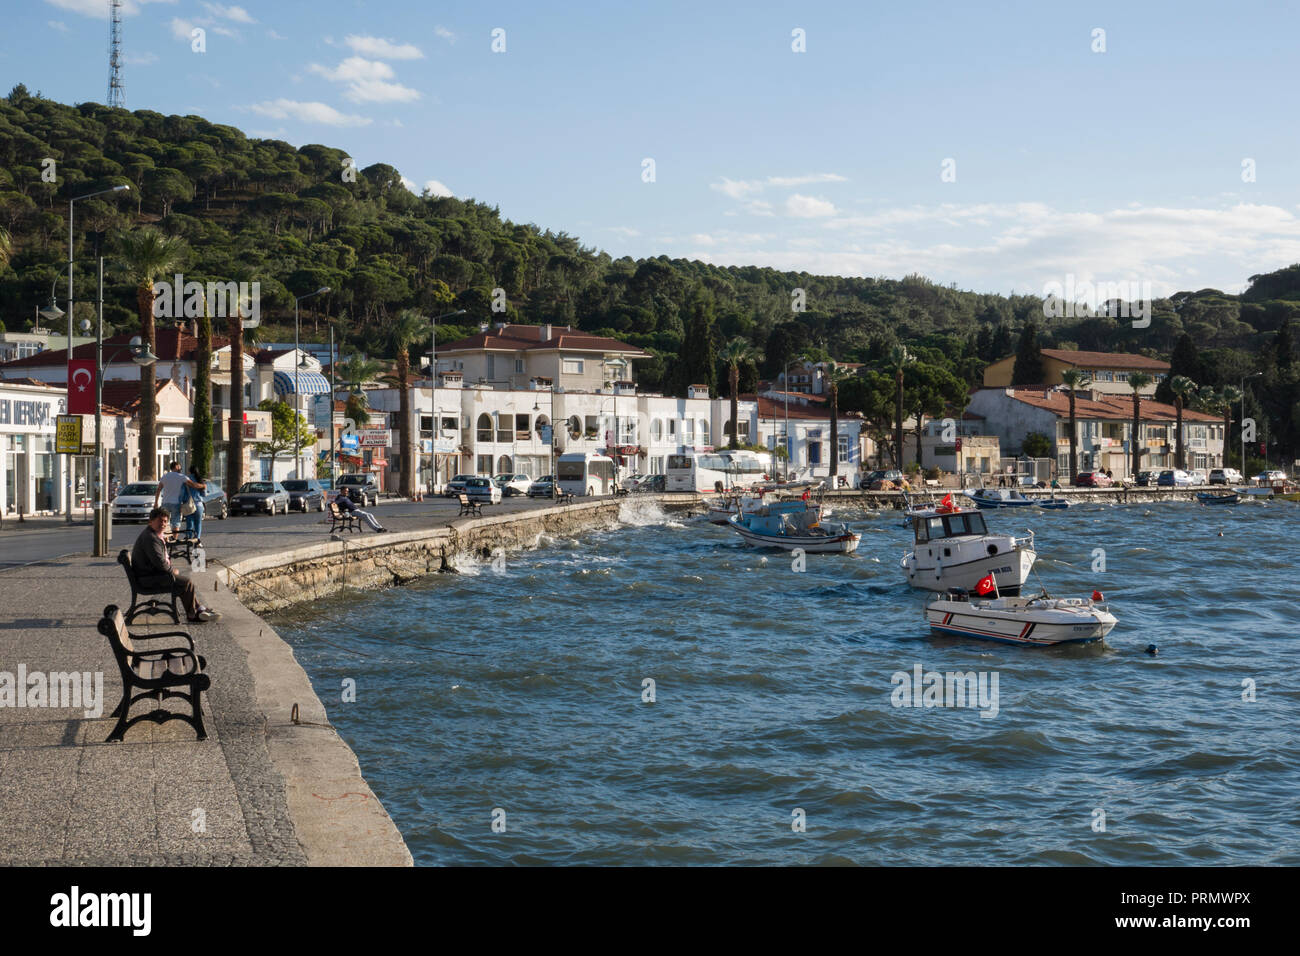 Scenic waterfront in Ayvalik on the Aegean coast, Turkey Stock Photo